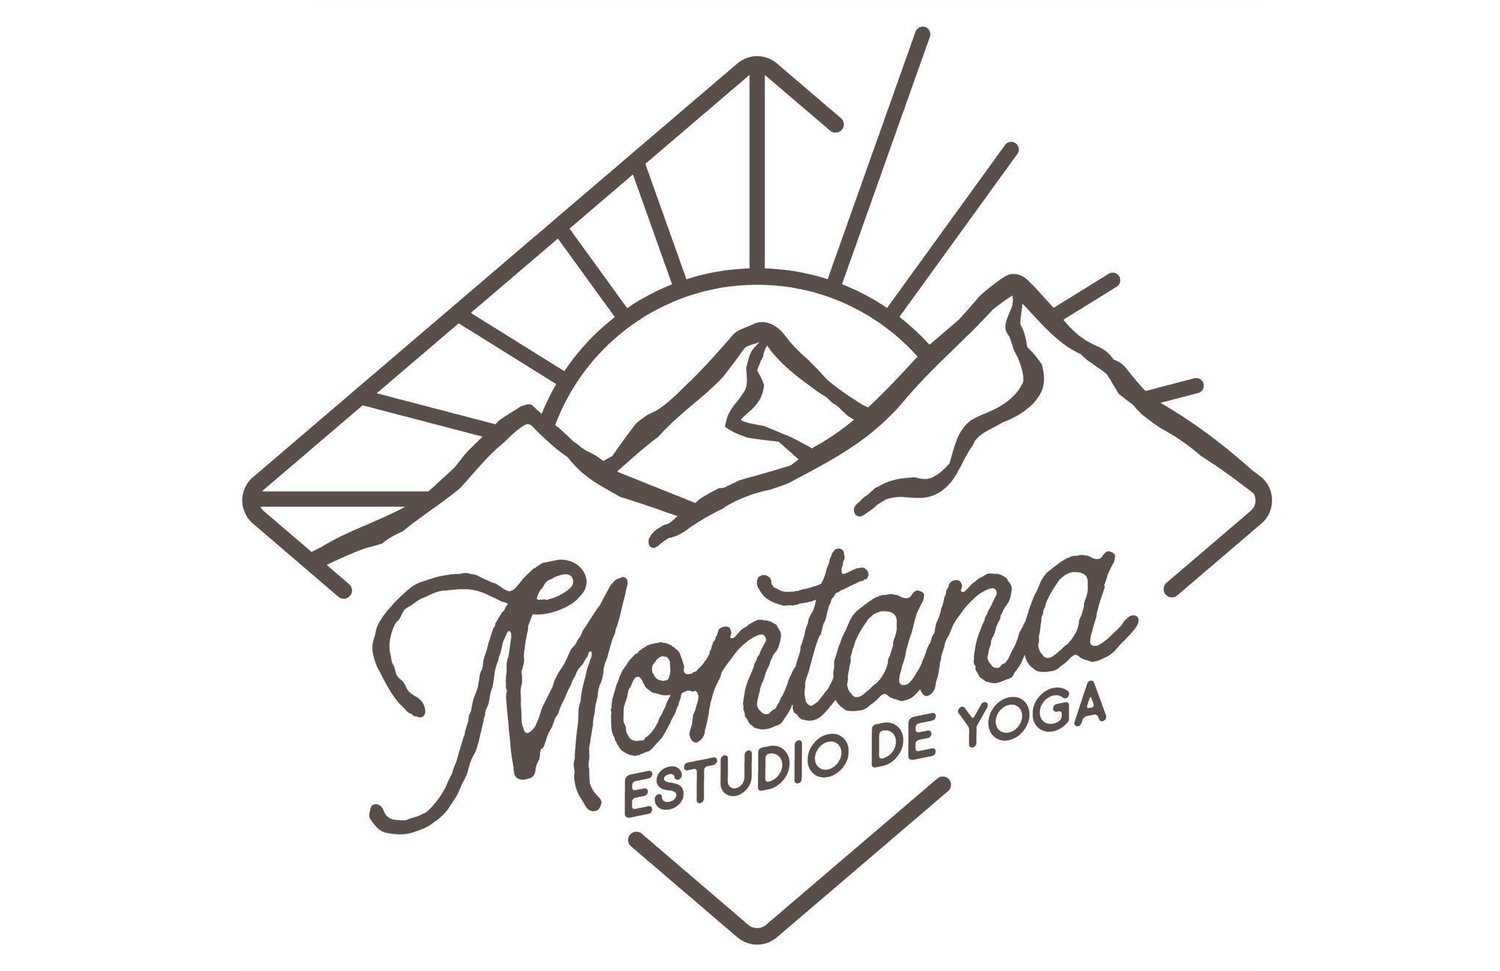 Montana Estudio de Yoga